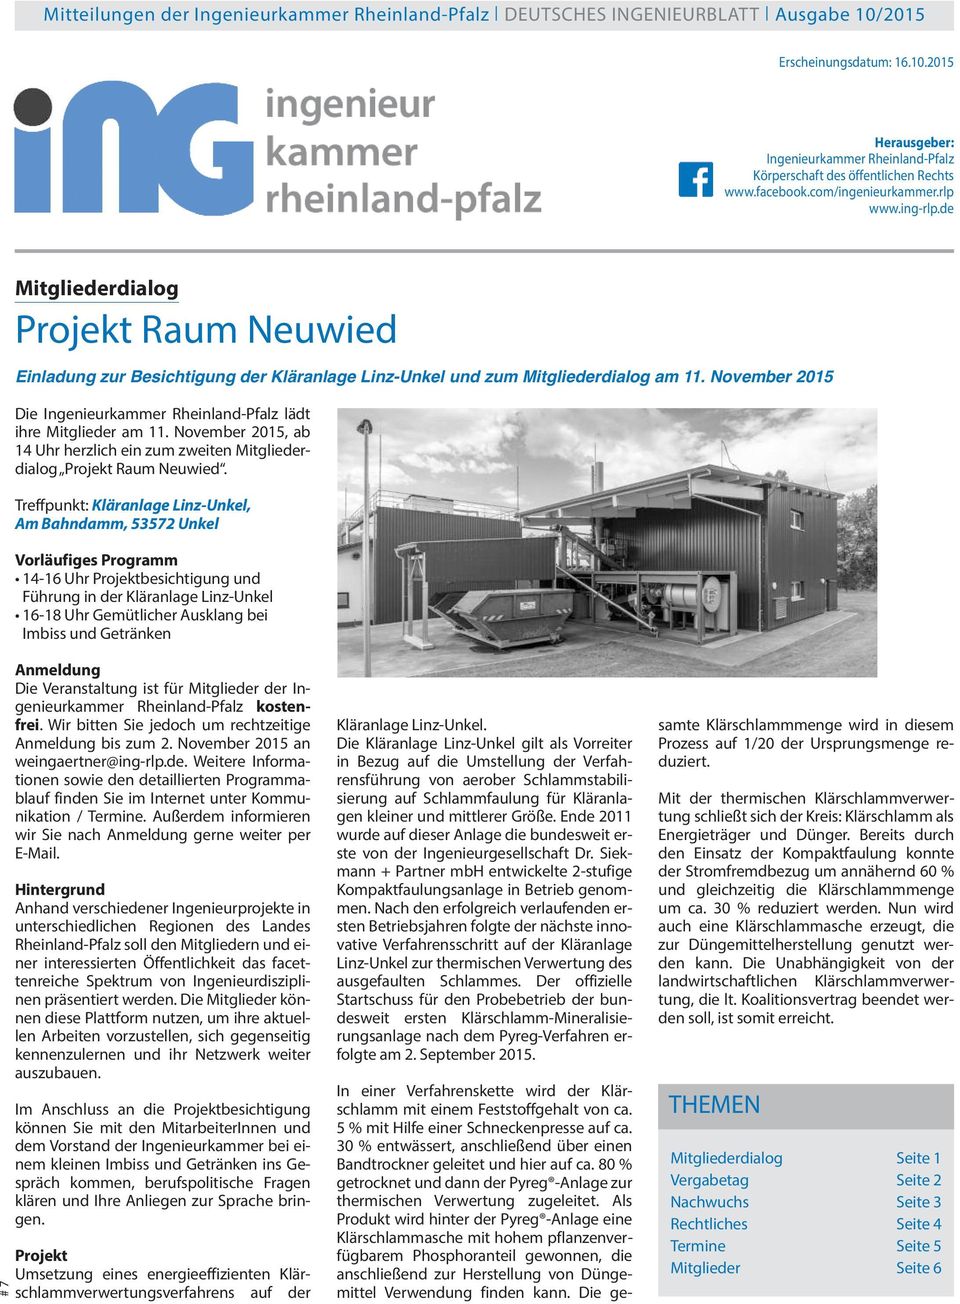 November 2015 Die Ingenieurkammer Rheinland-Pfalz lädt ihre Mitglieder am 11. November 2015, ab 14 Uhr herzlich ein zum zweiten Mitgliederdialog Projekt Raum Neuwied.